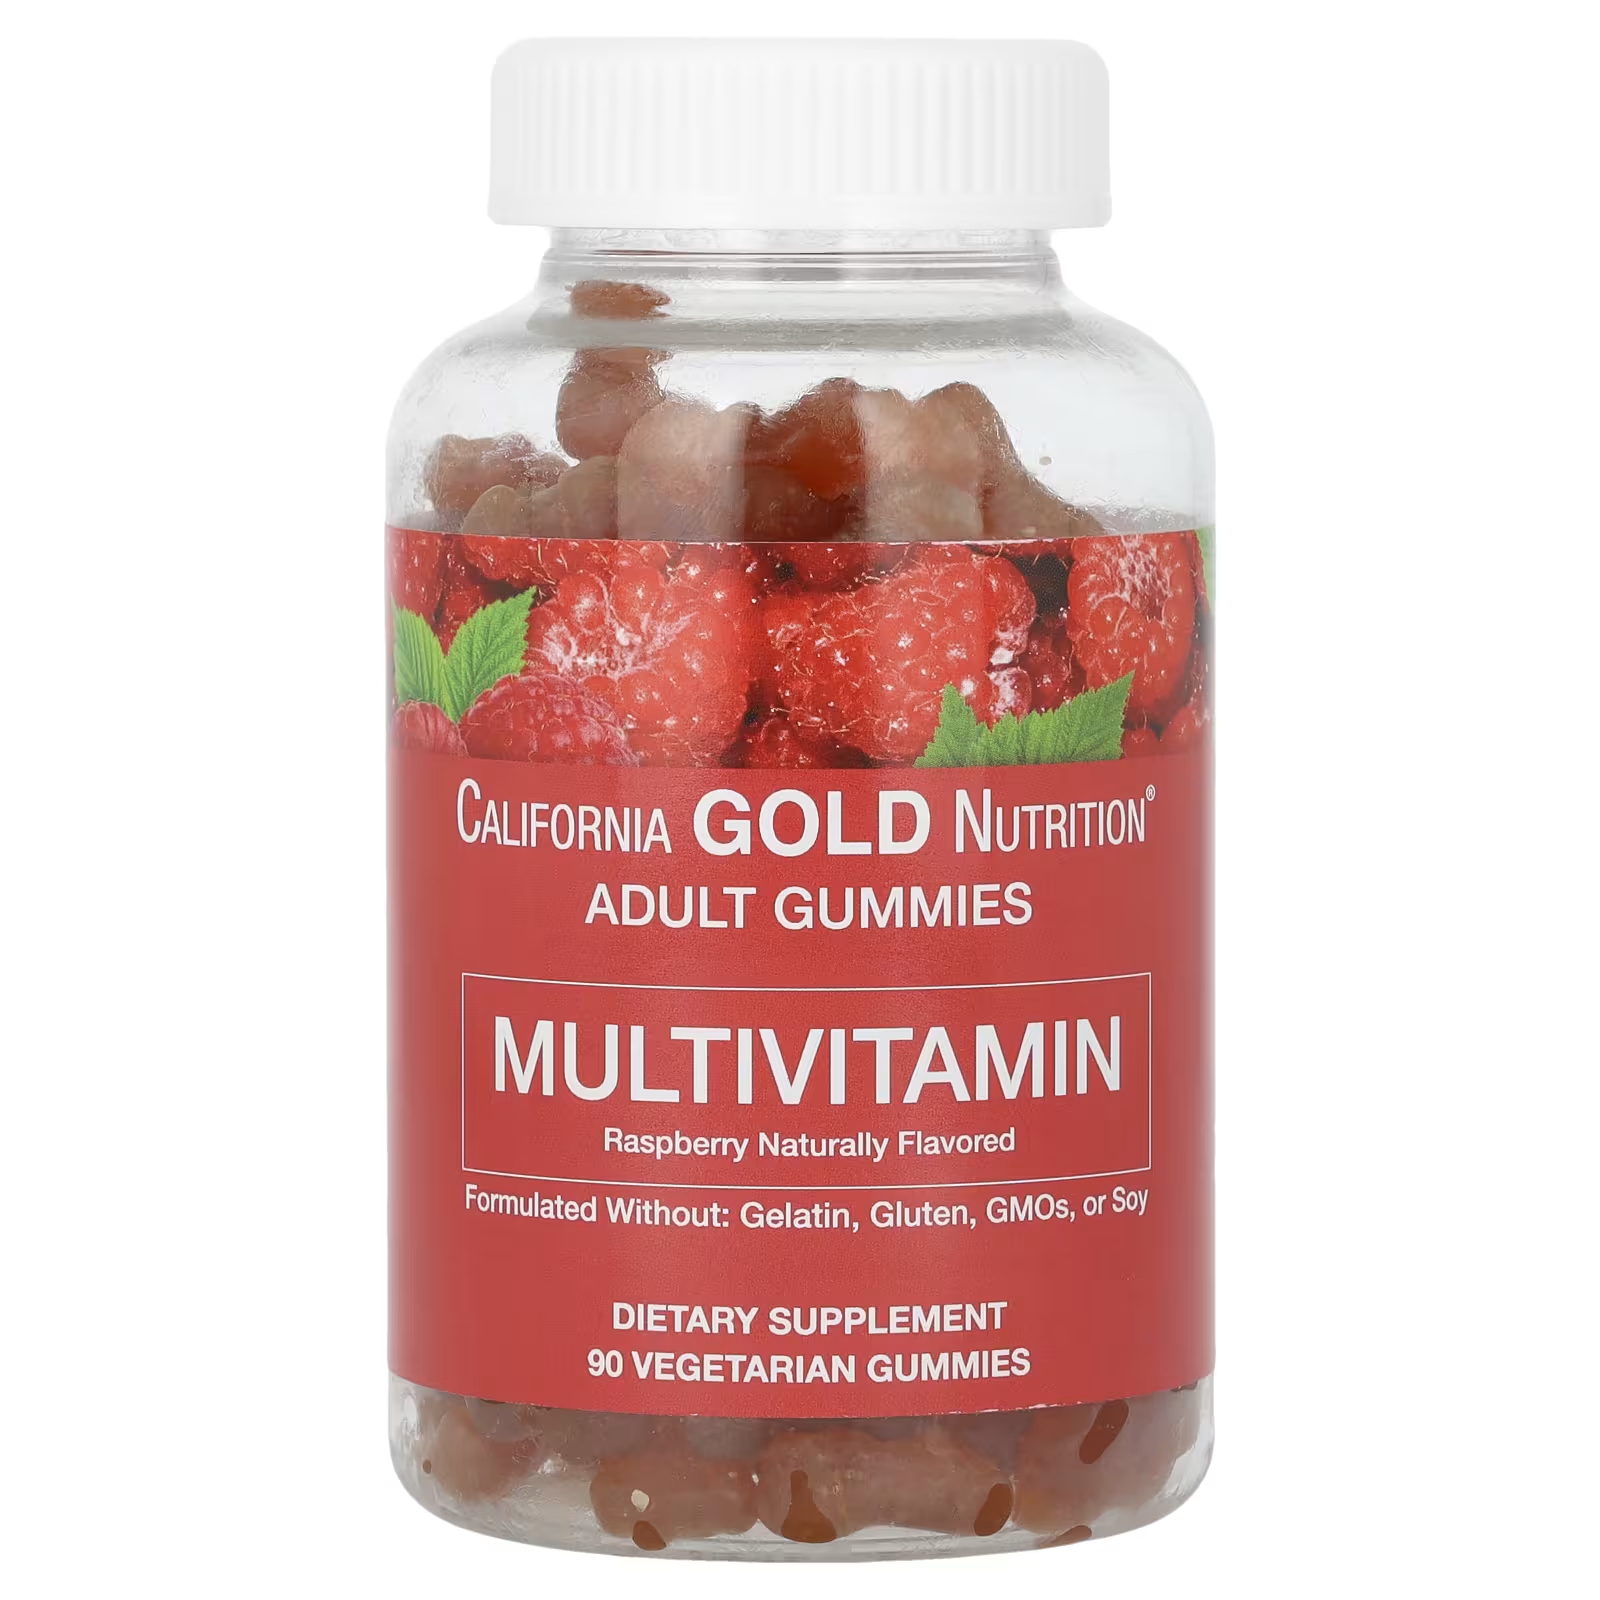 цена Мультивитаминные жевательные конфеты для взрослых с натуральным вкусом малины, 90 вегетарианских жевательных конфет California Gold Nutrition